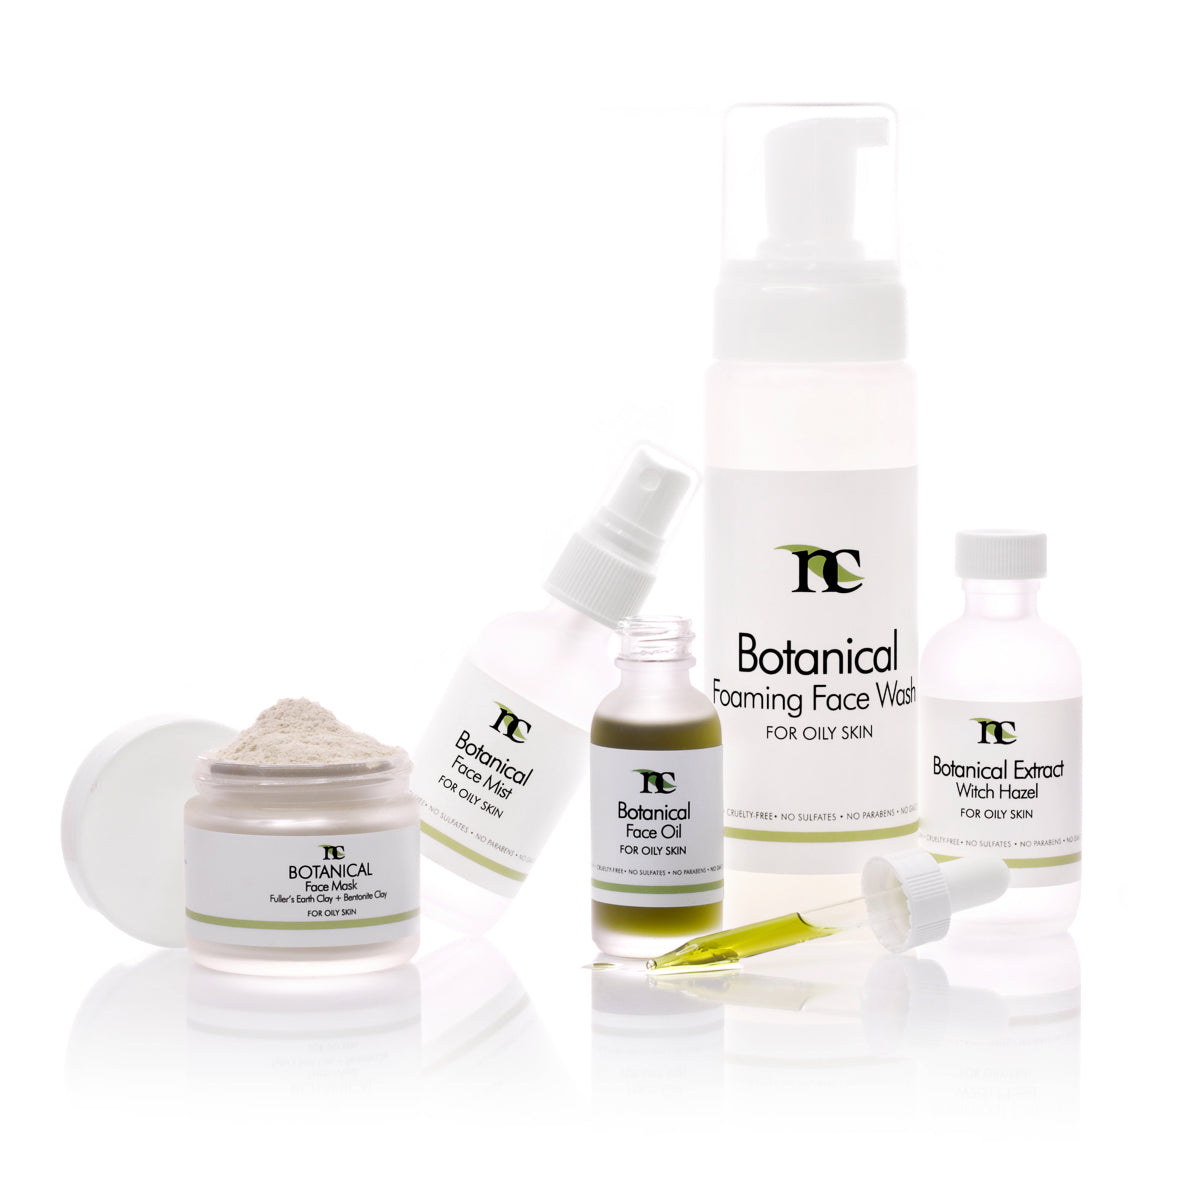 Botanical Skincare Set product photo on white background